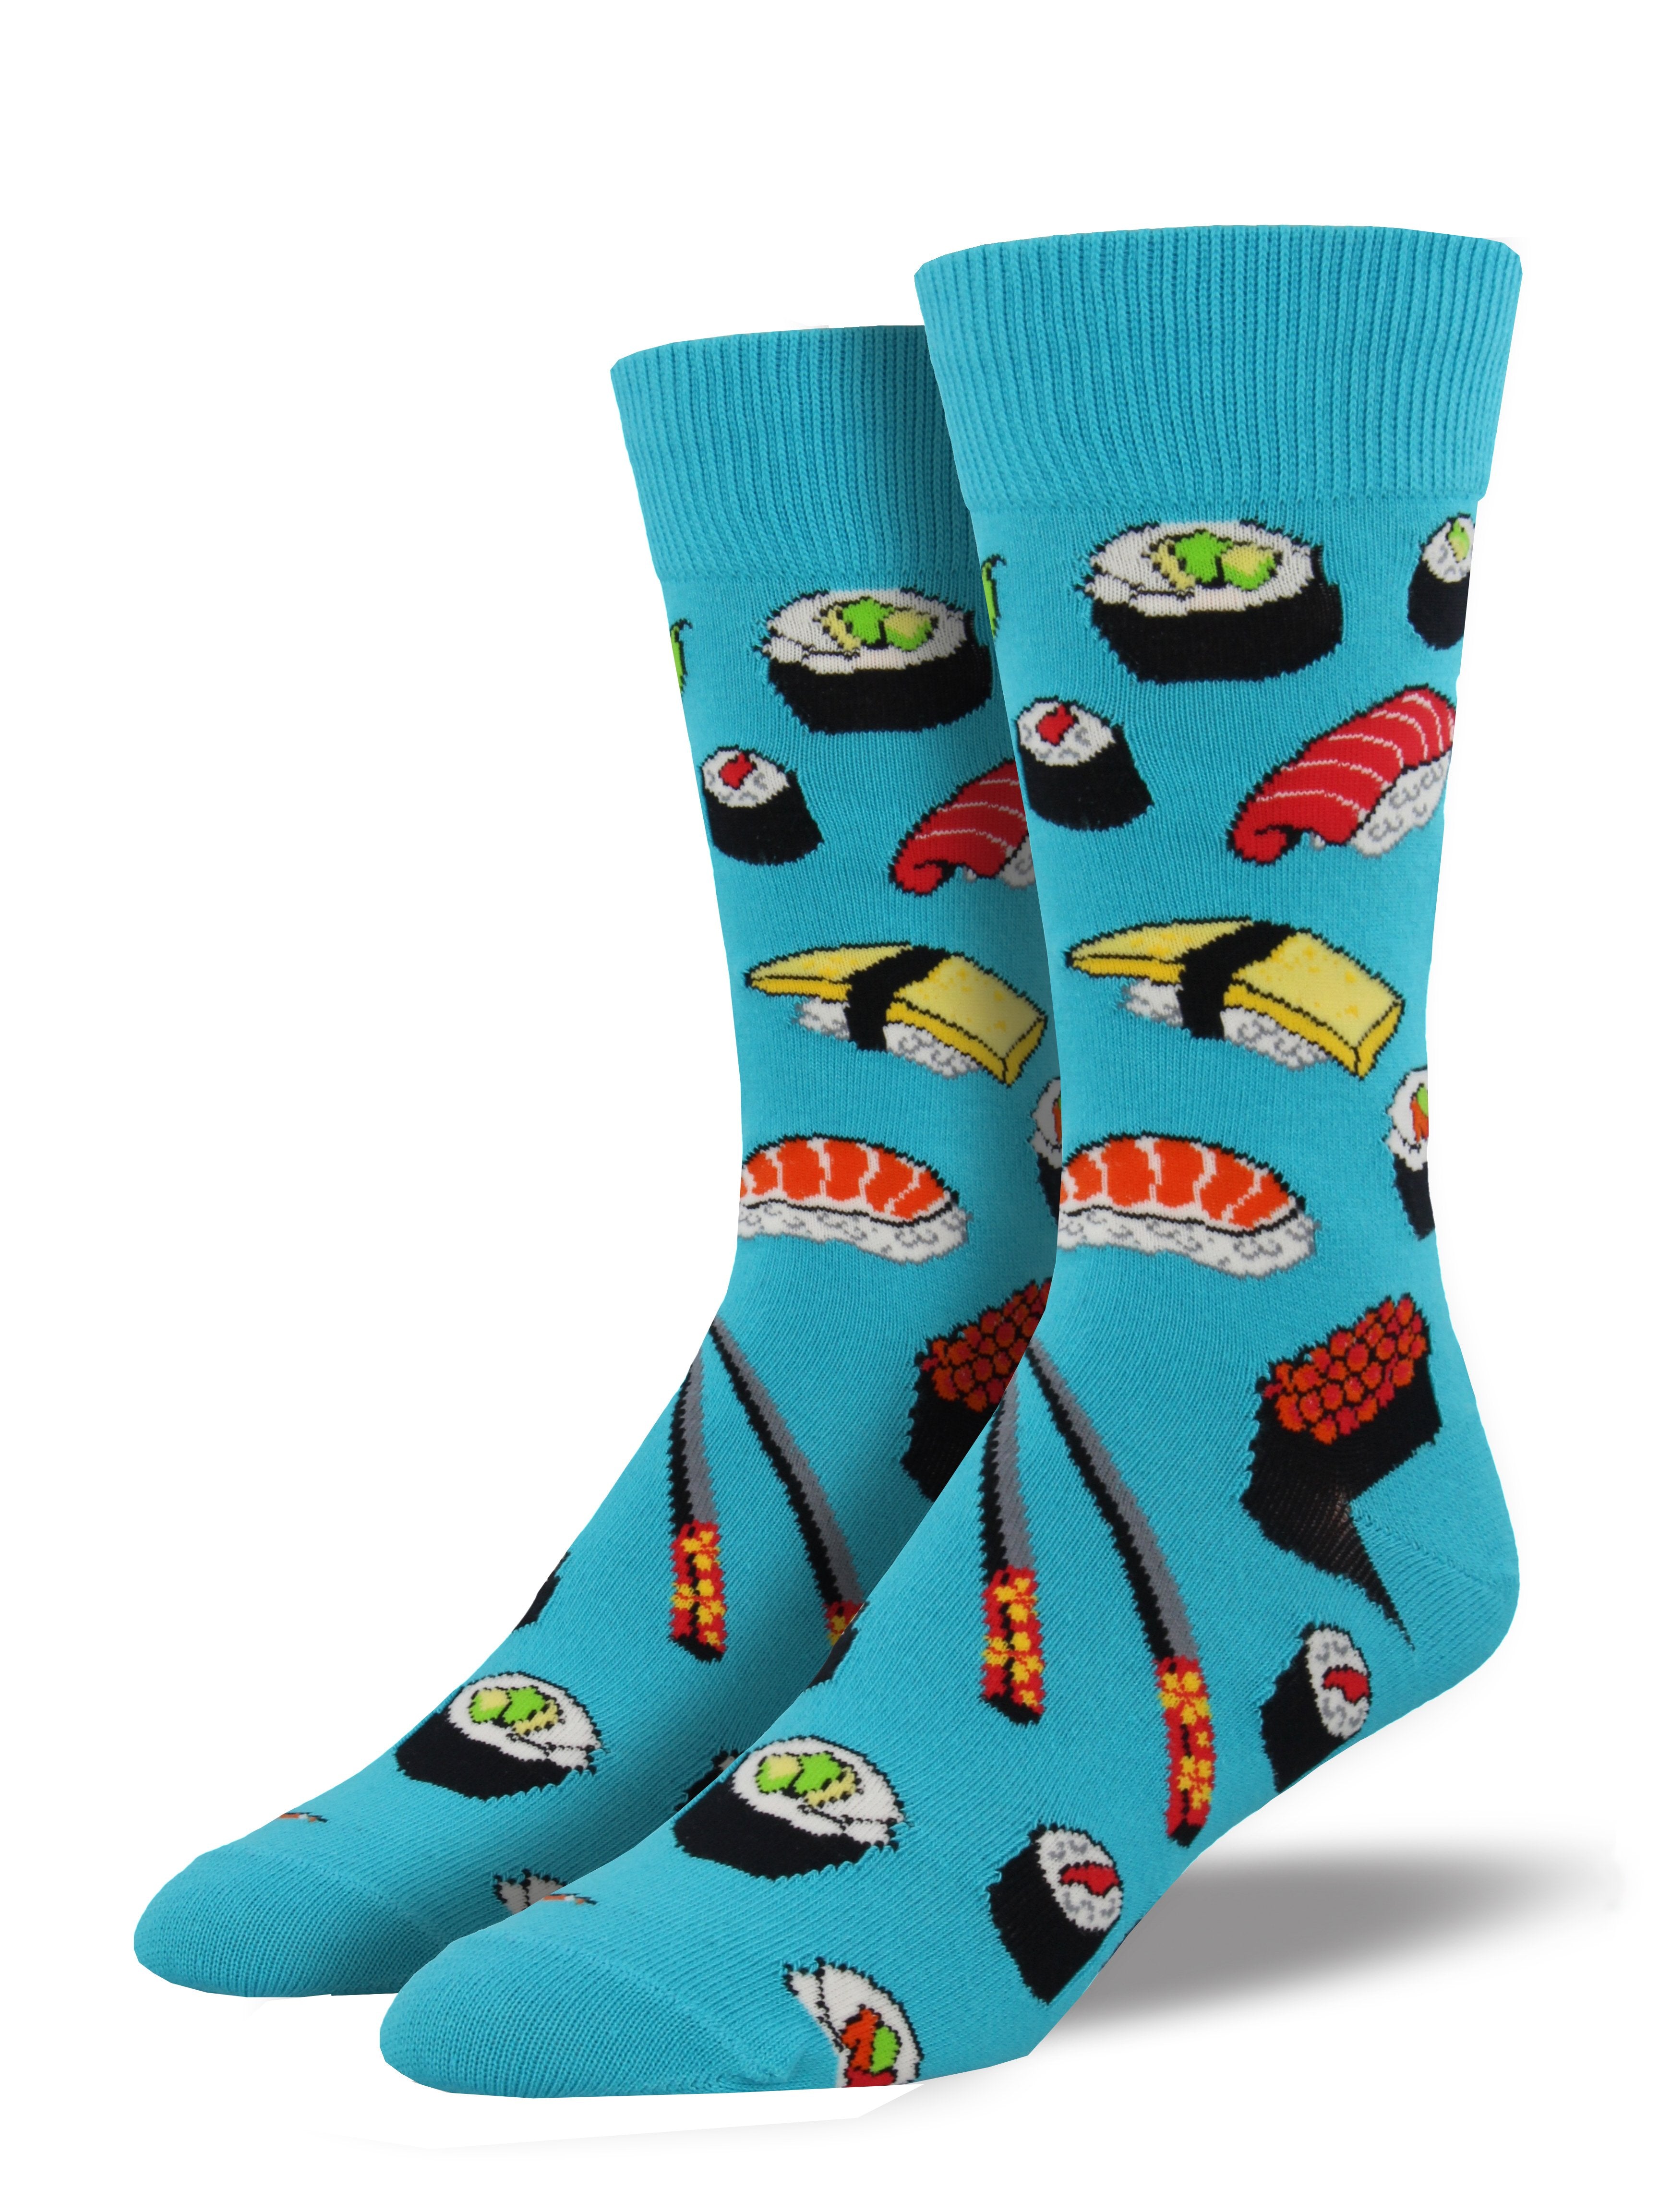 Men's "Sushi" Socks